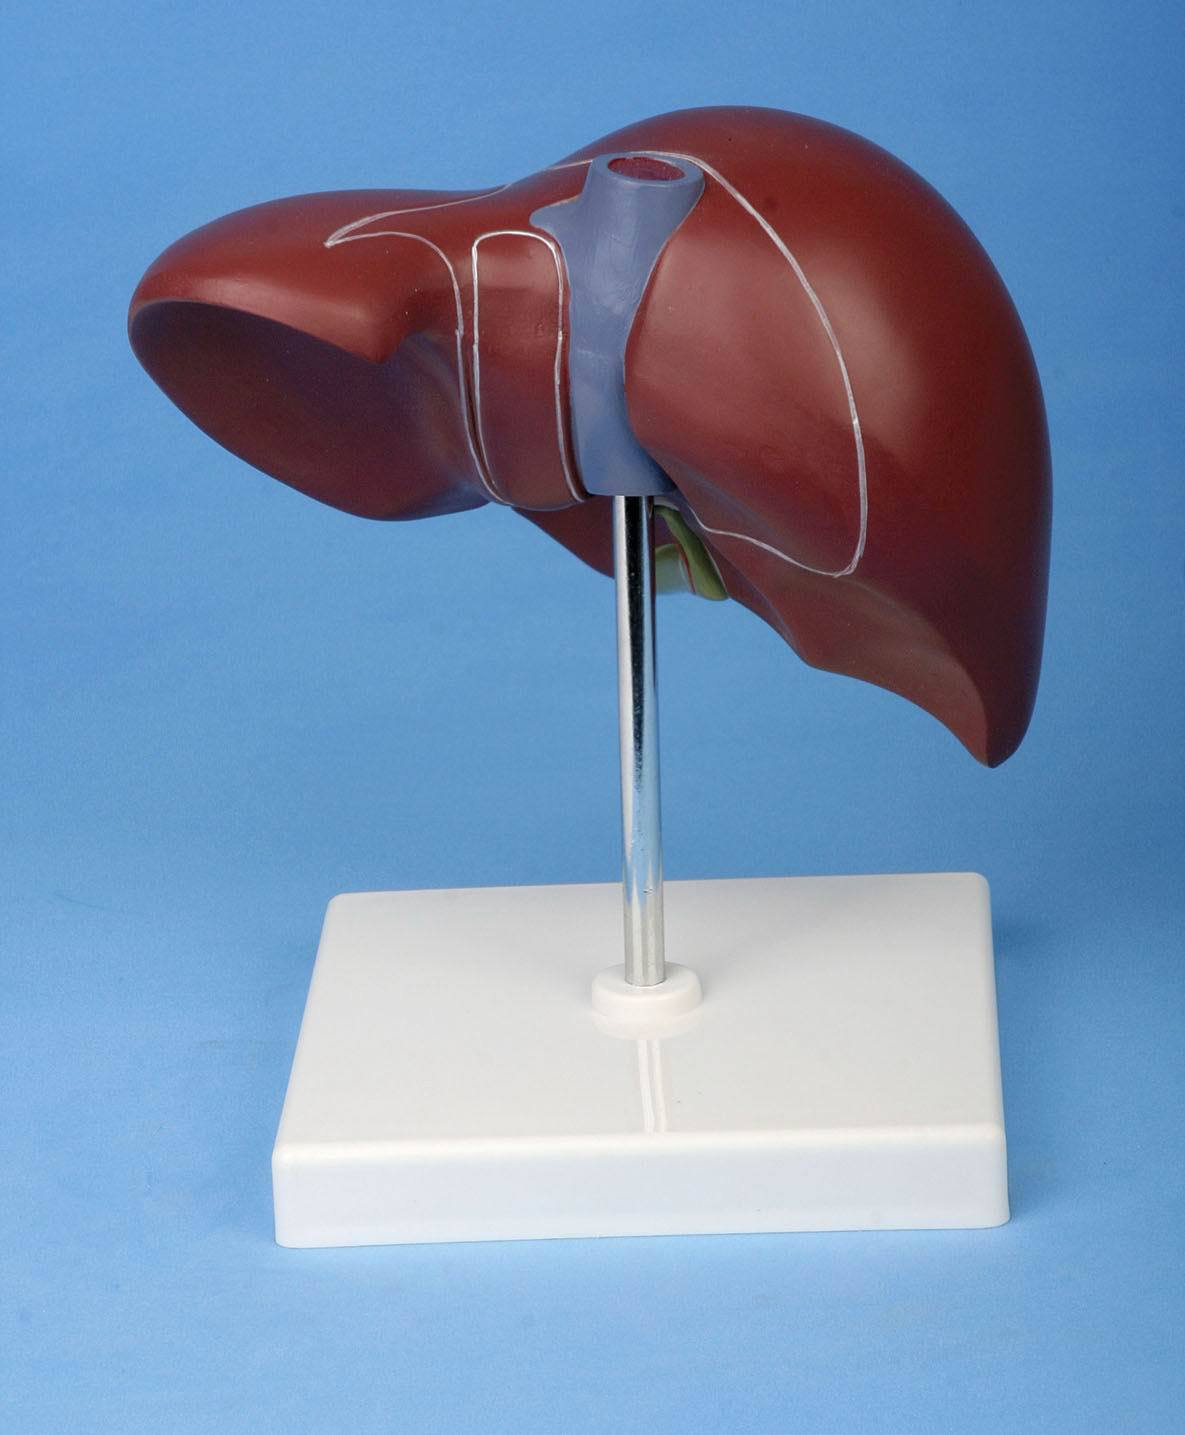 人体正常肝脏解剖模型 有底座 医学教学模型 厂家直销